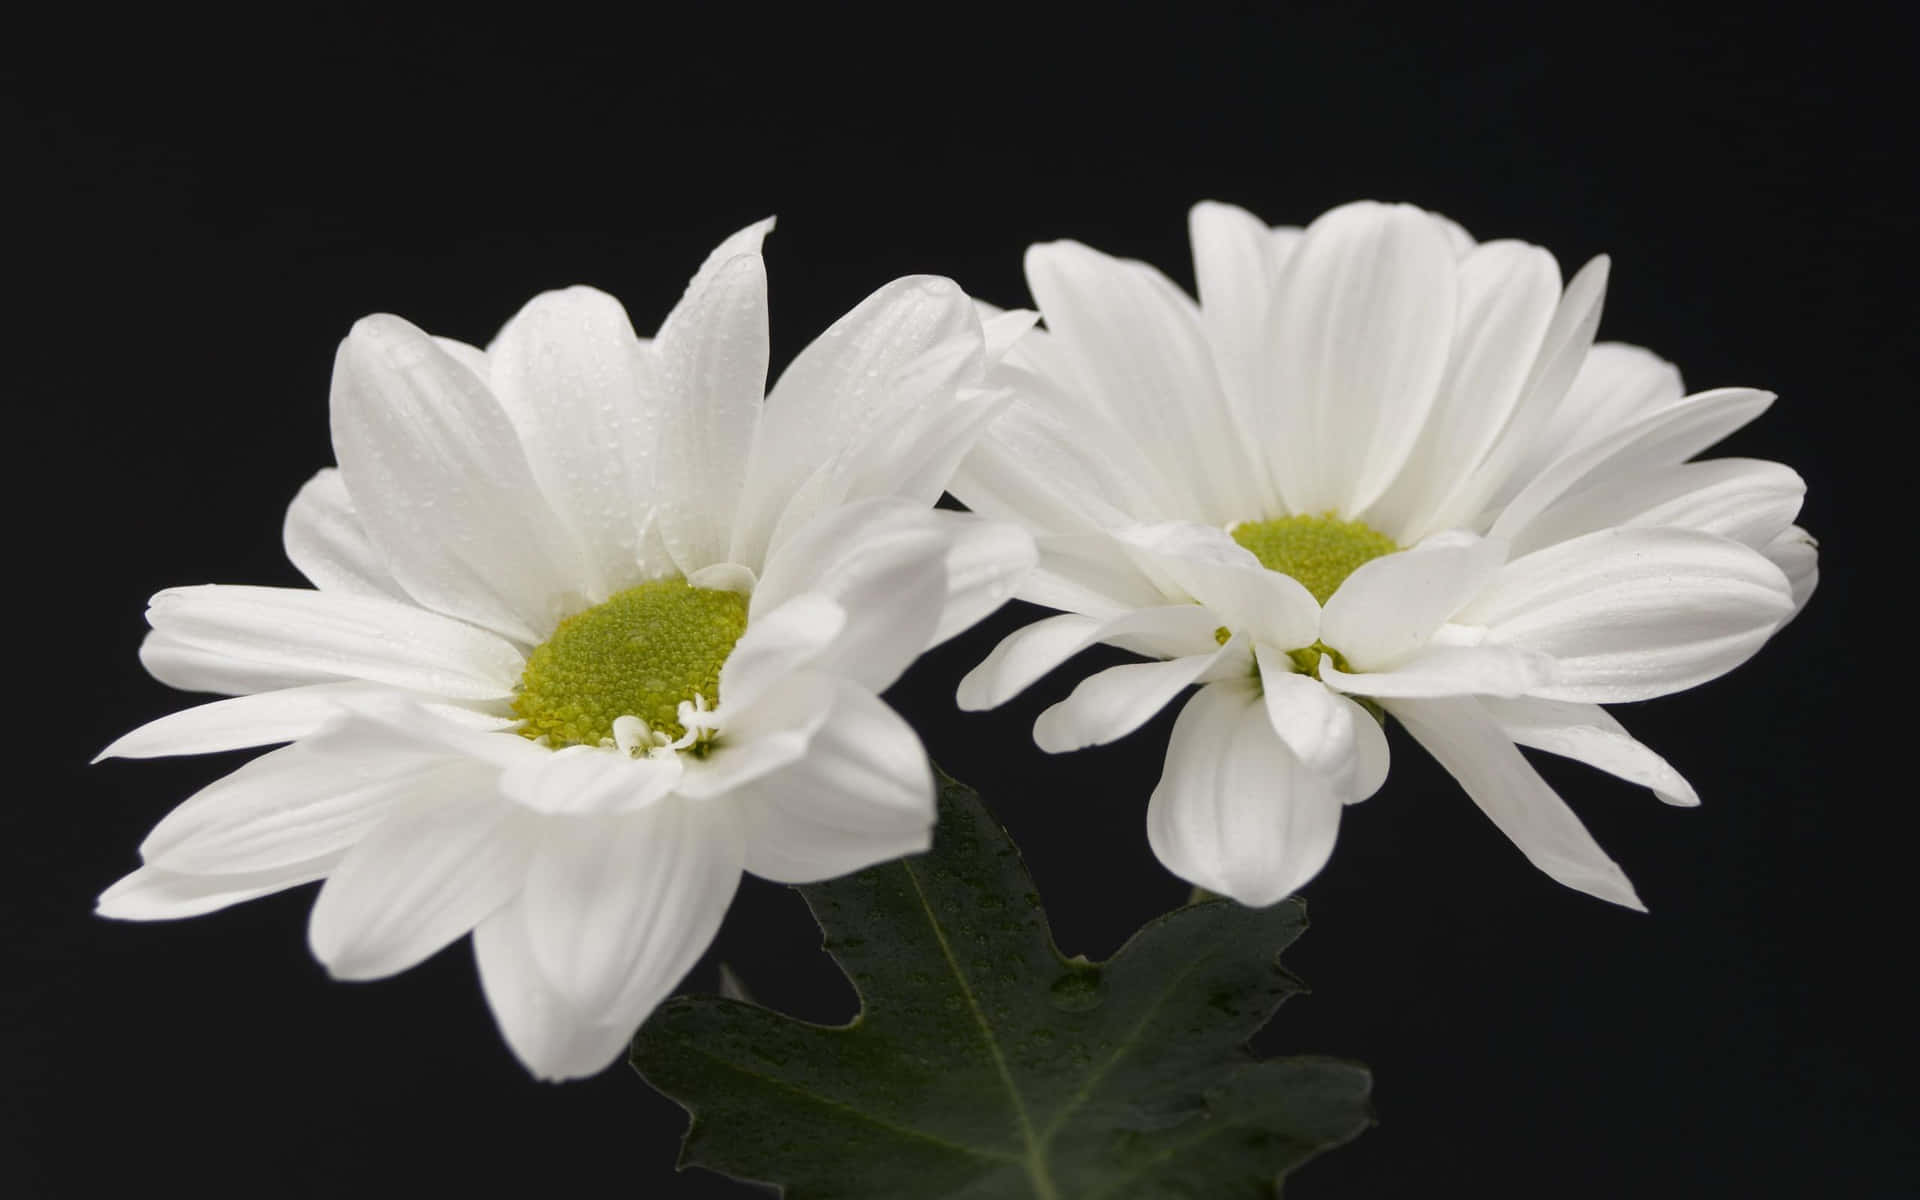 Serene Beauty of White Flowers